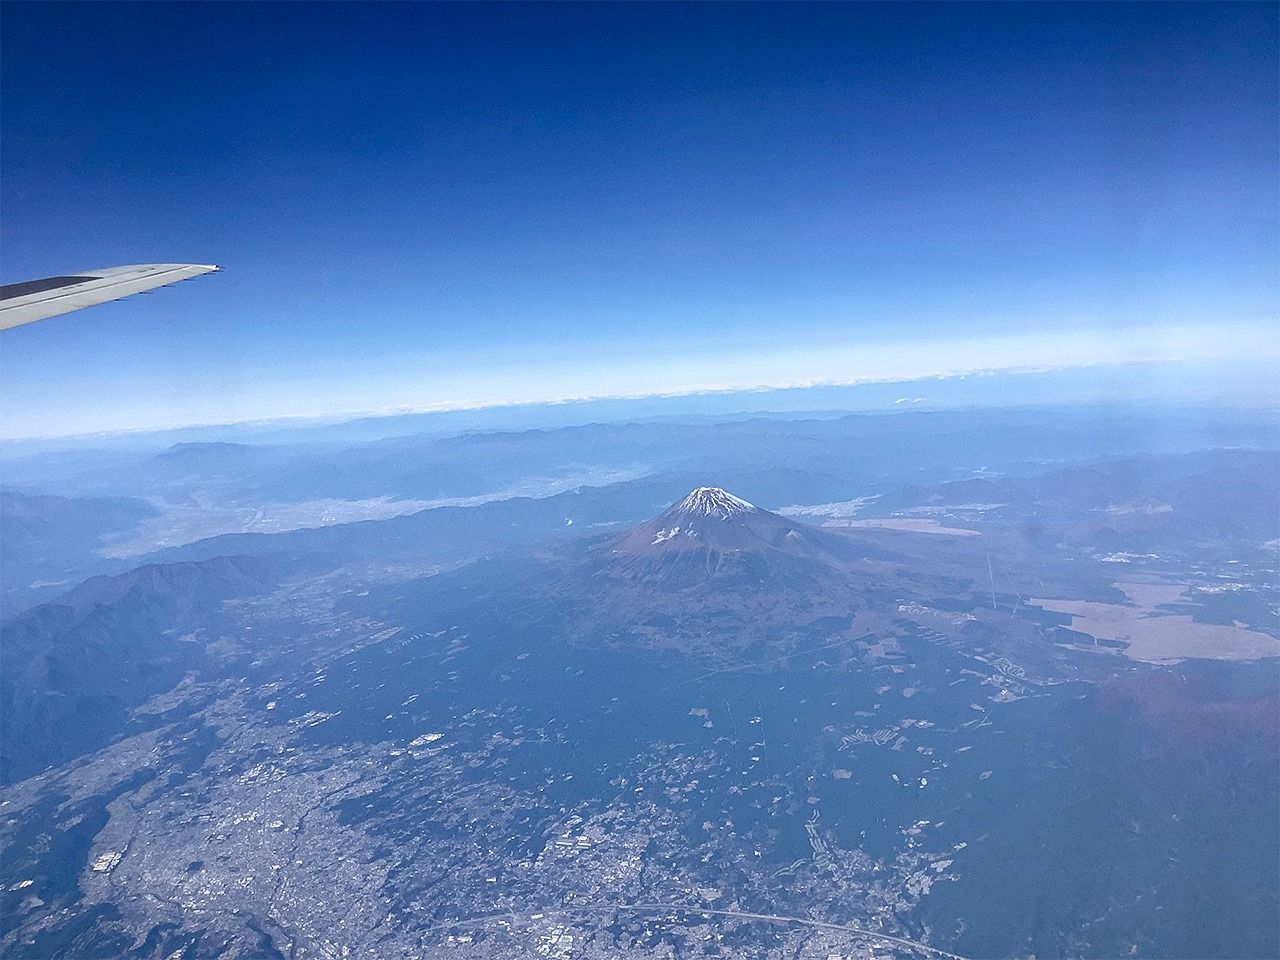 Le mont Fuji, dressant vers le ciel sa majestueuse solitude, offre un cadre idéal pour l’observation météorologique. (Photo de l’auteur)